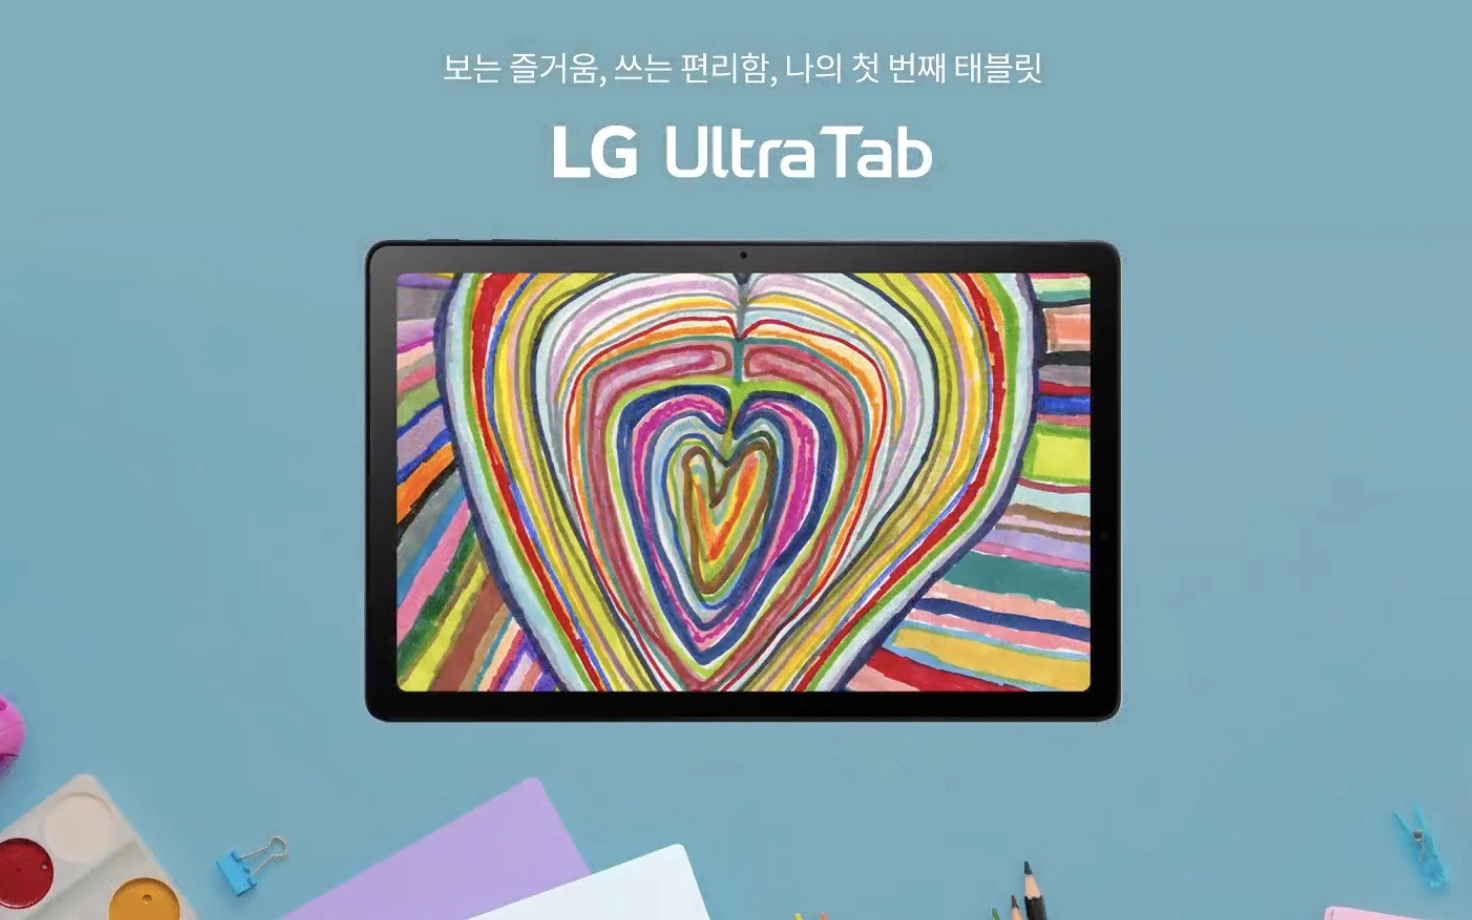 LG bất ngờ ra mắt máy tính bảng tầm trung, giá 7.6 triệu đồng